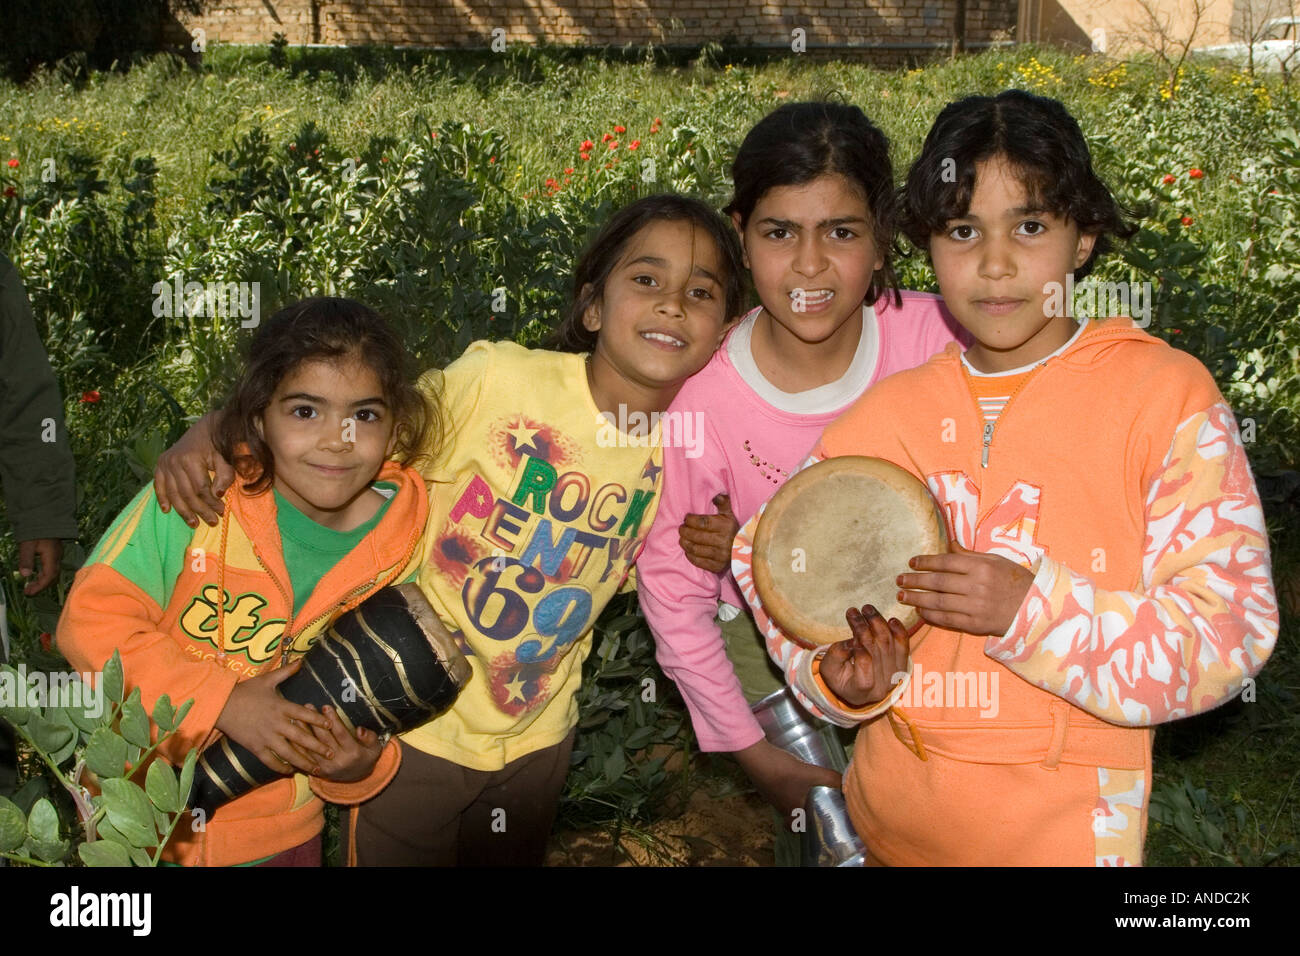 Al-Khadra, Near Tarhouna, Libya. Libyan Girls Stock Photo